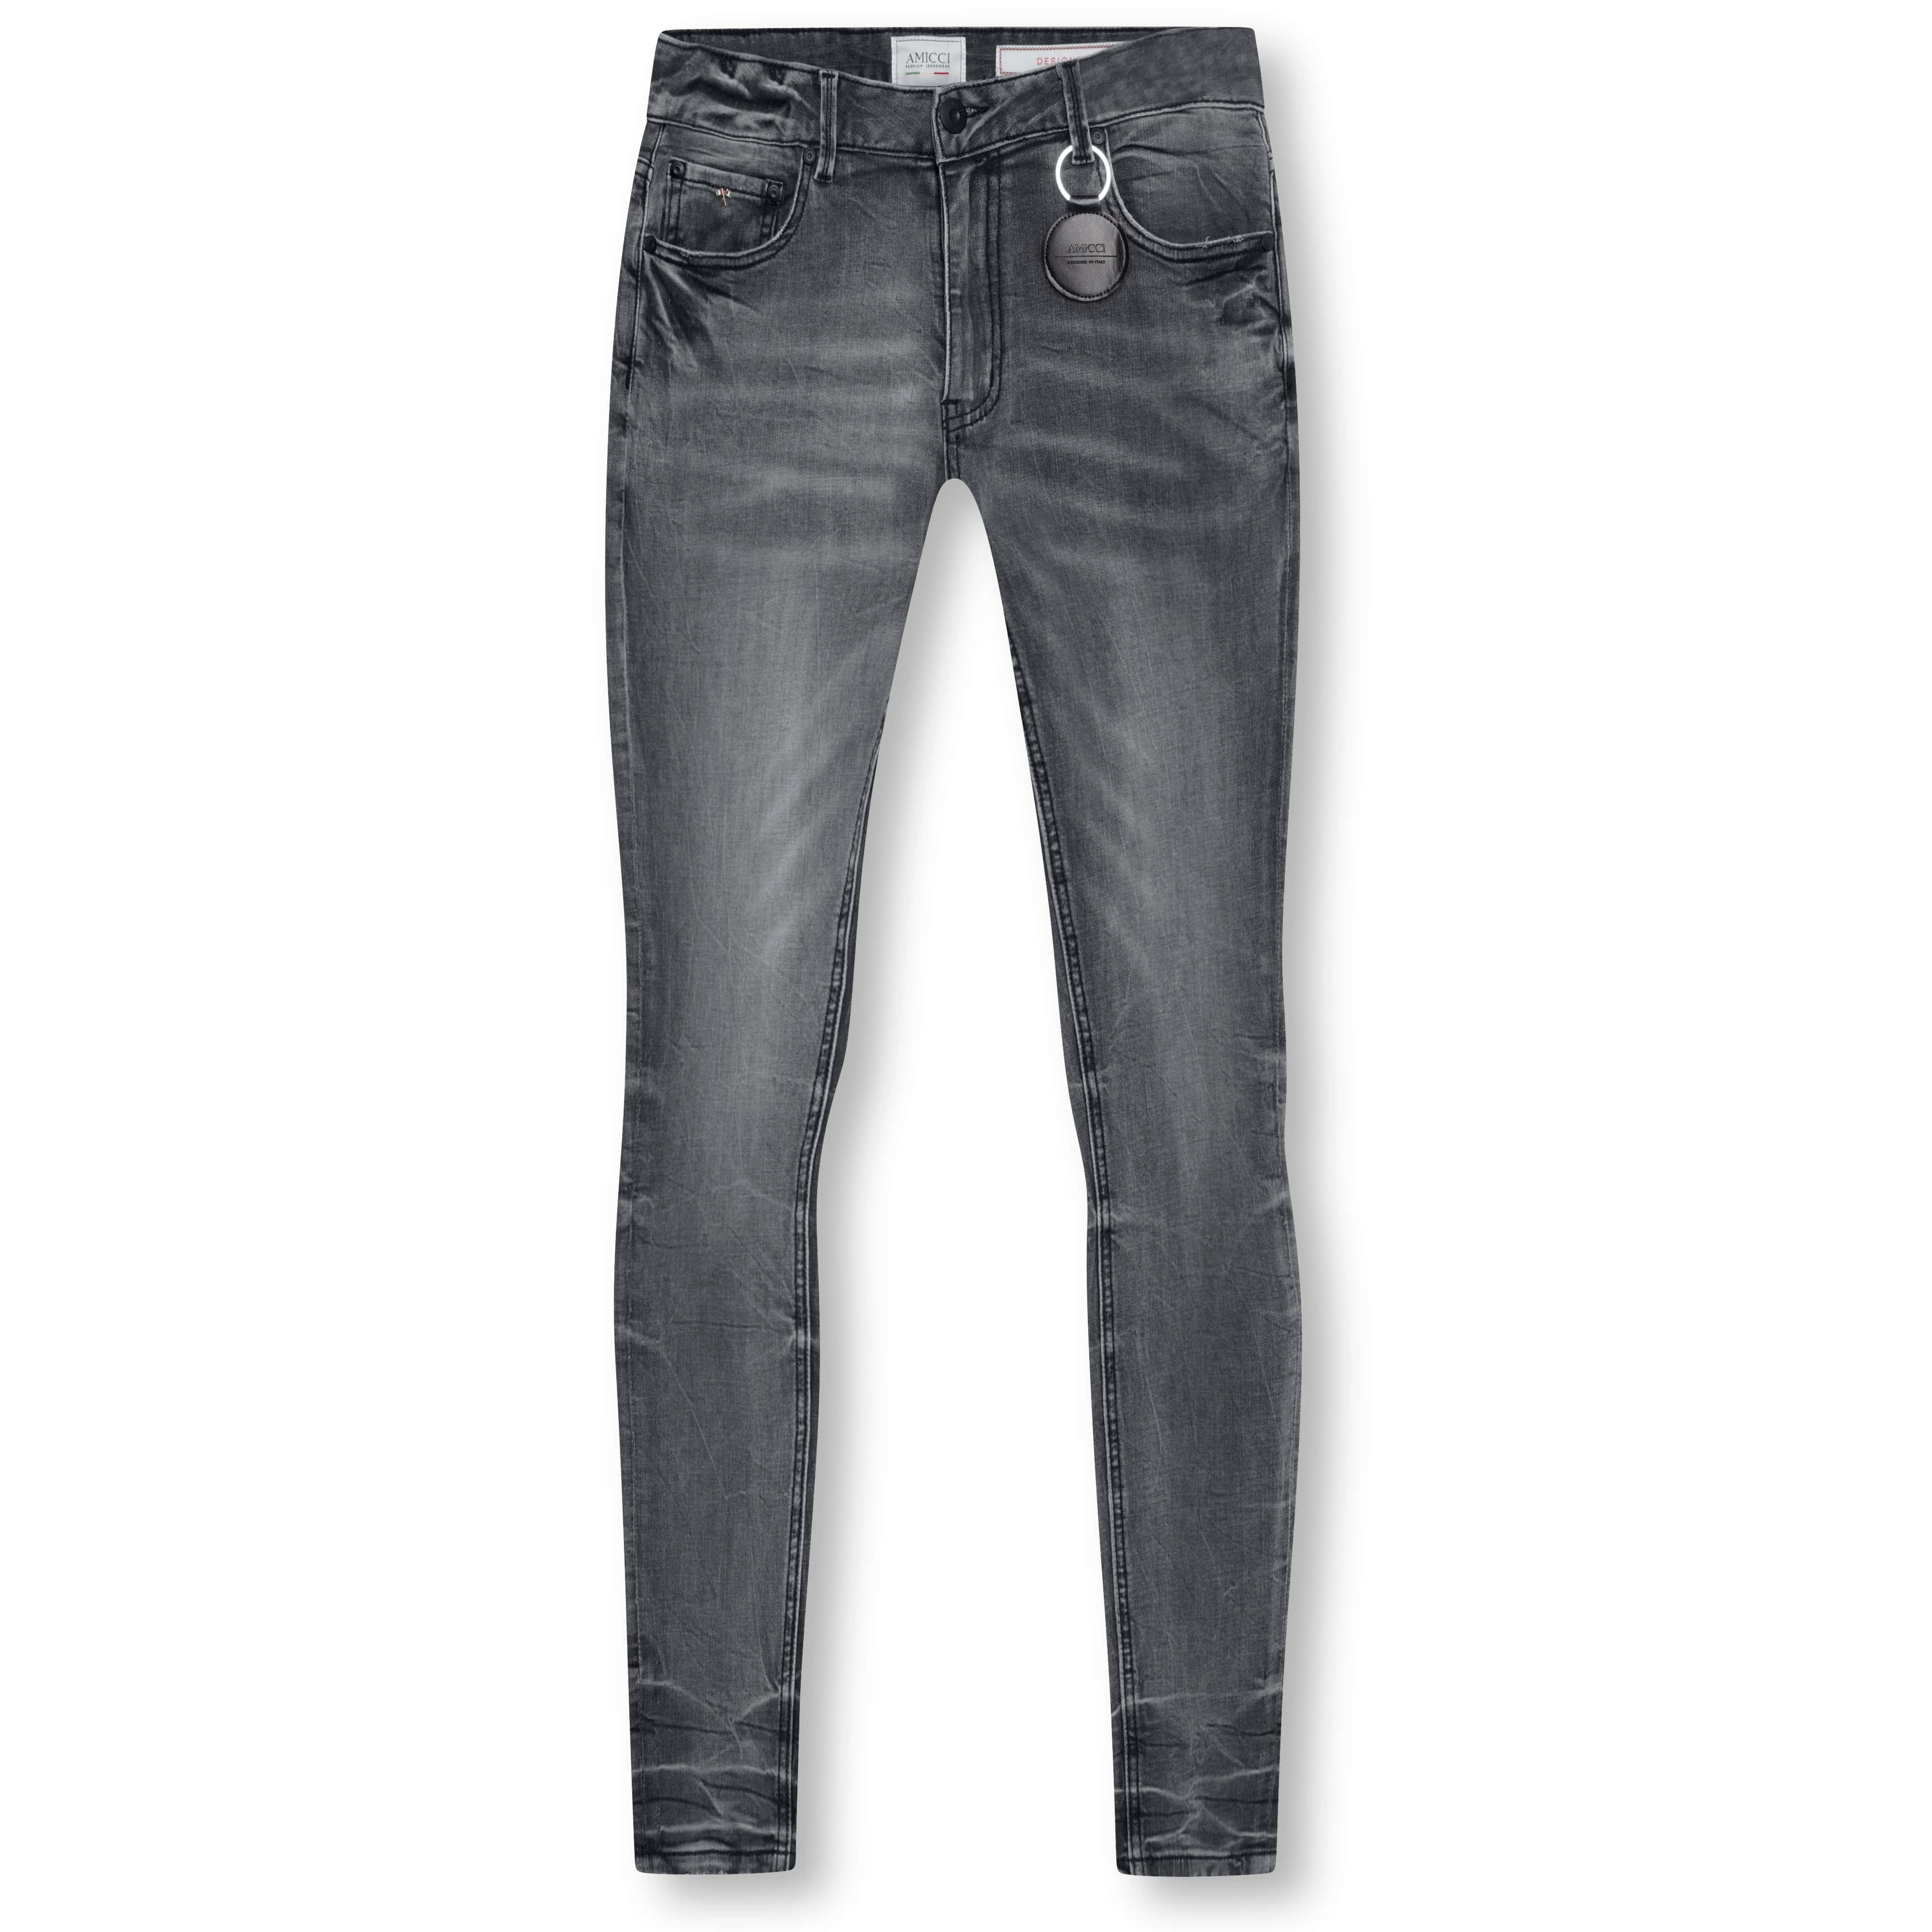 Amicci Premium - Roma Denim Slim Grey Fit Jeans